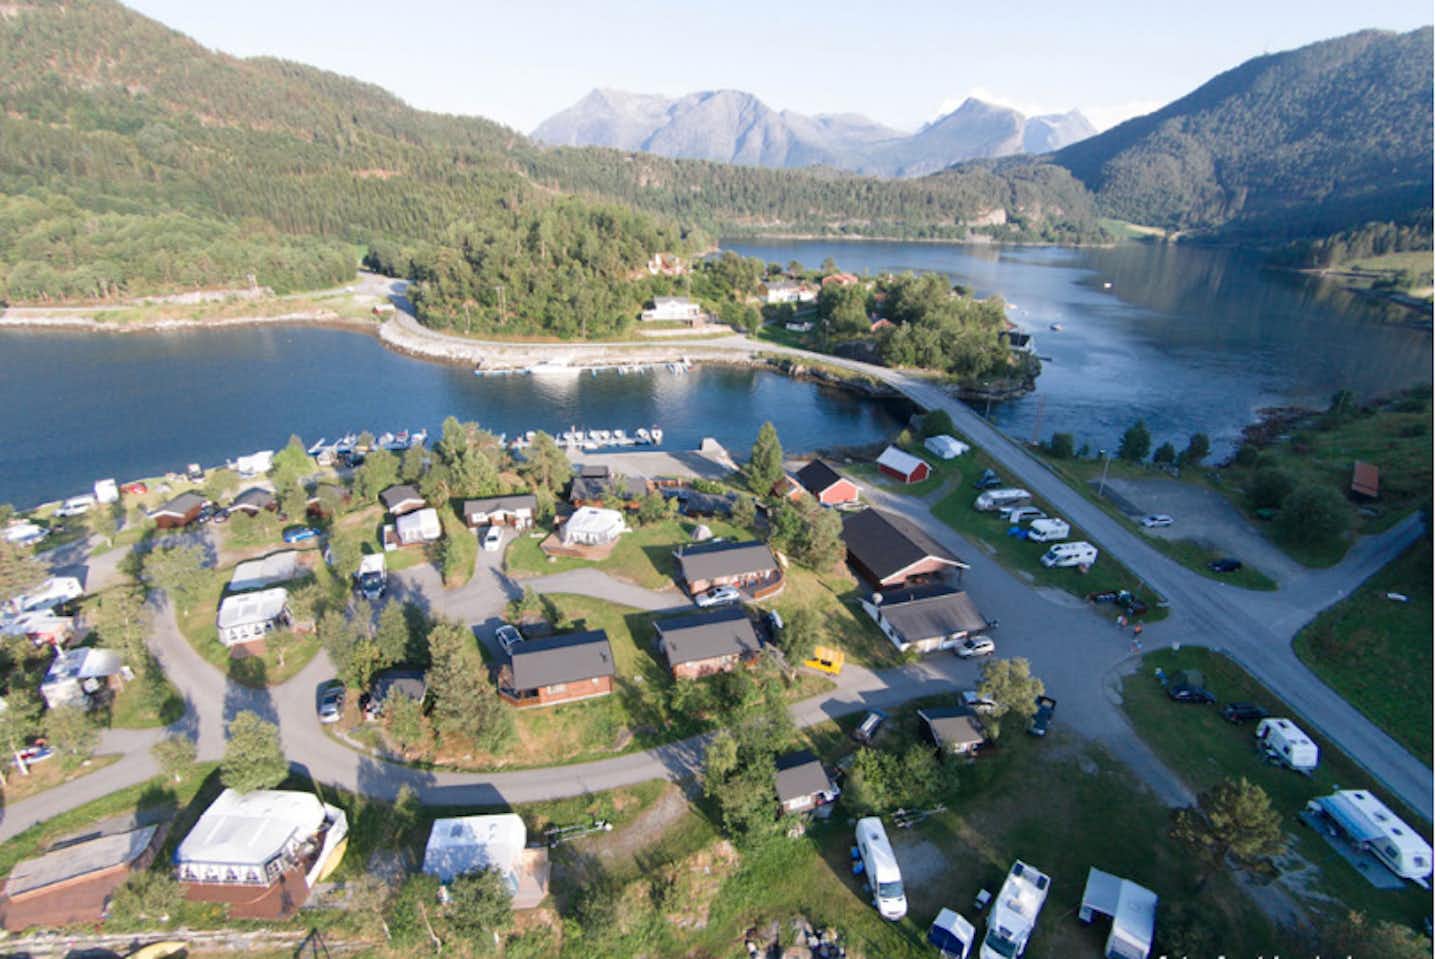 Camping Saltkjelsnes - Vogelperspektive auf den Campingplatz und die Natur Norwegens